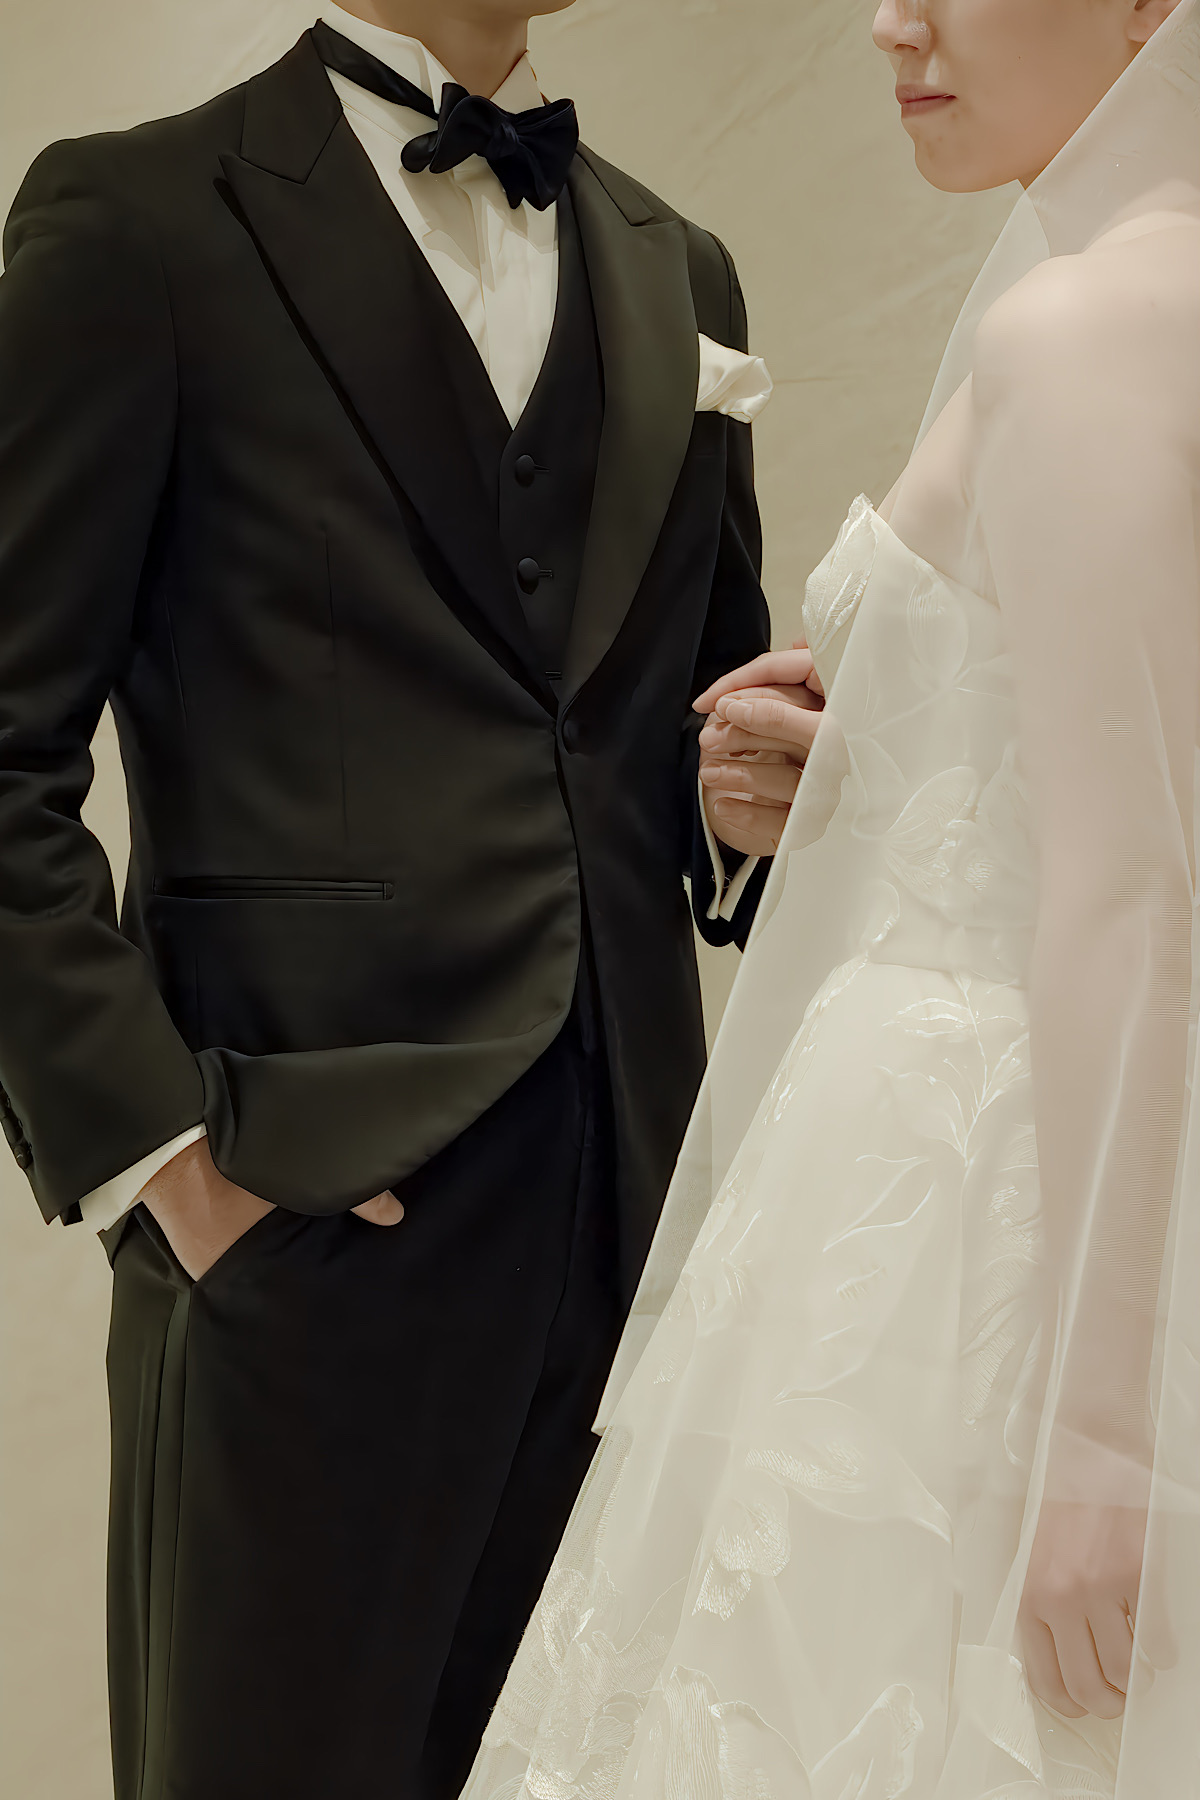 レンタルタキシードのご紹介　THE TREAT DRESSINGでお取り扱いしているご新郎様の婚礼衣裳であるタキシードは美しいシルエットとウェディングドレスドレスとコントラストを生むブラックのカラーがクラシカルな印象